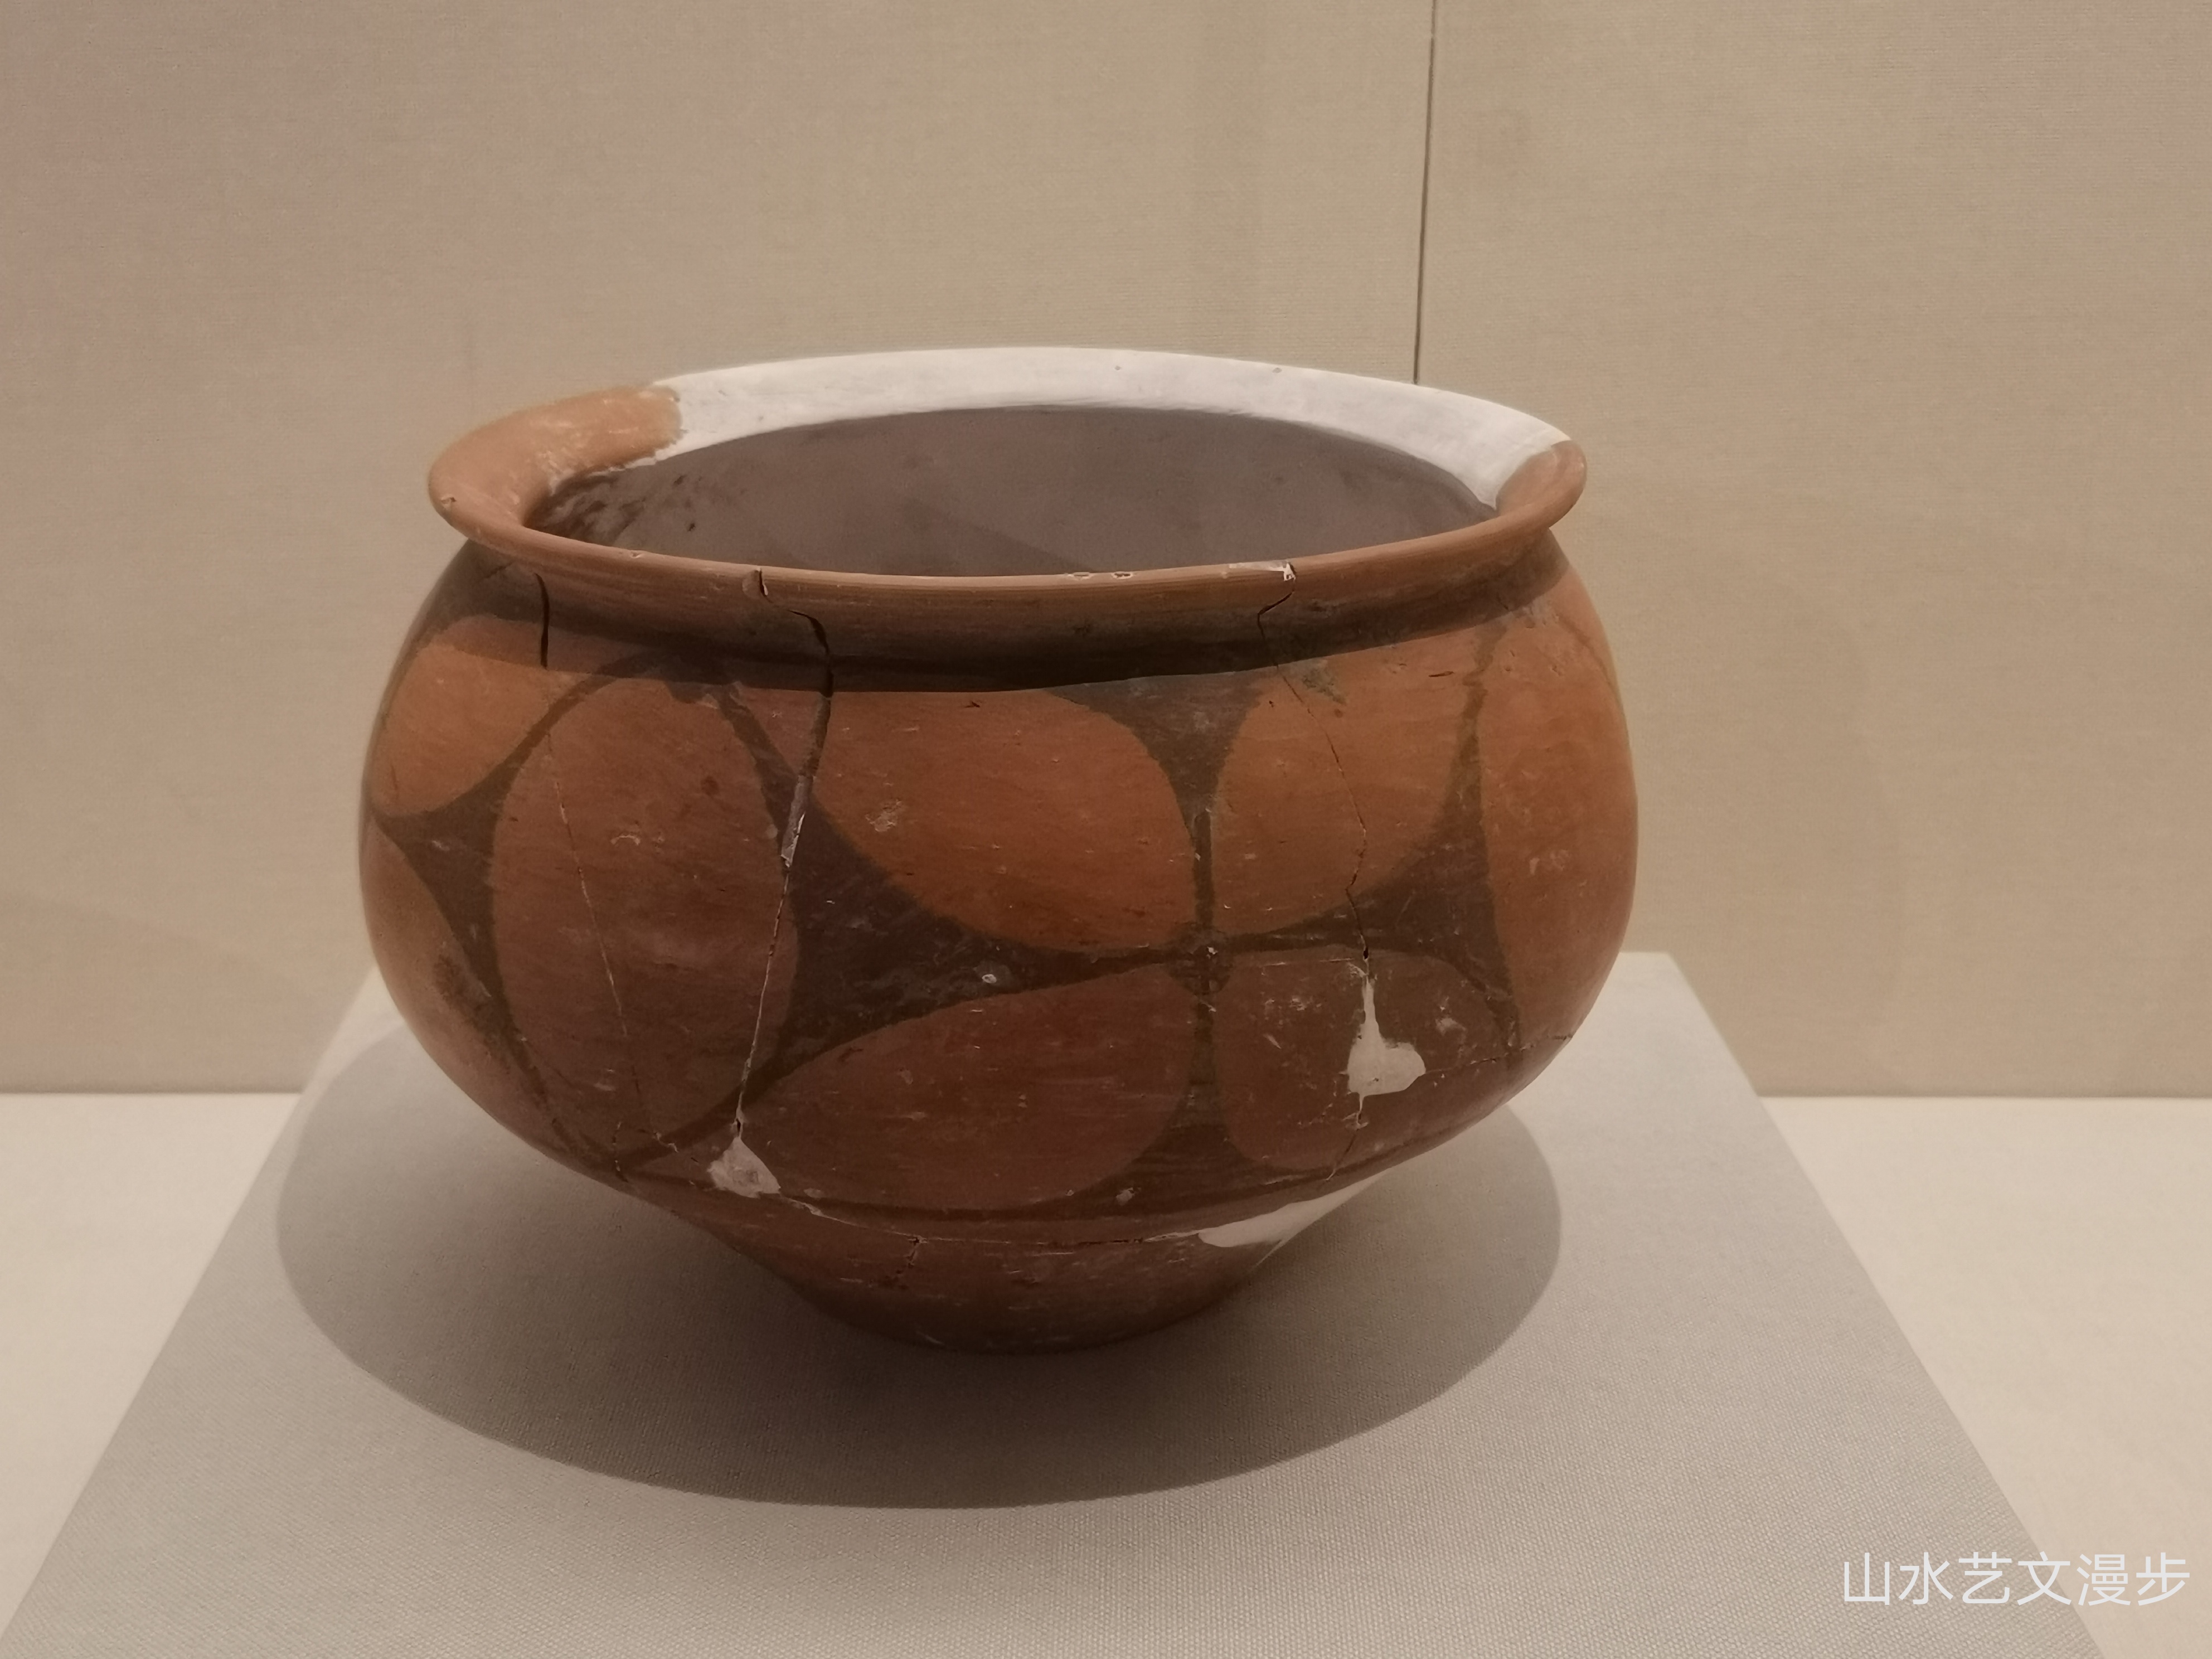 中国最早的彩陶:大地湾遗址彩陶